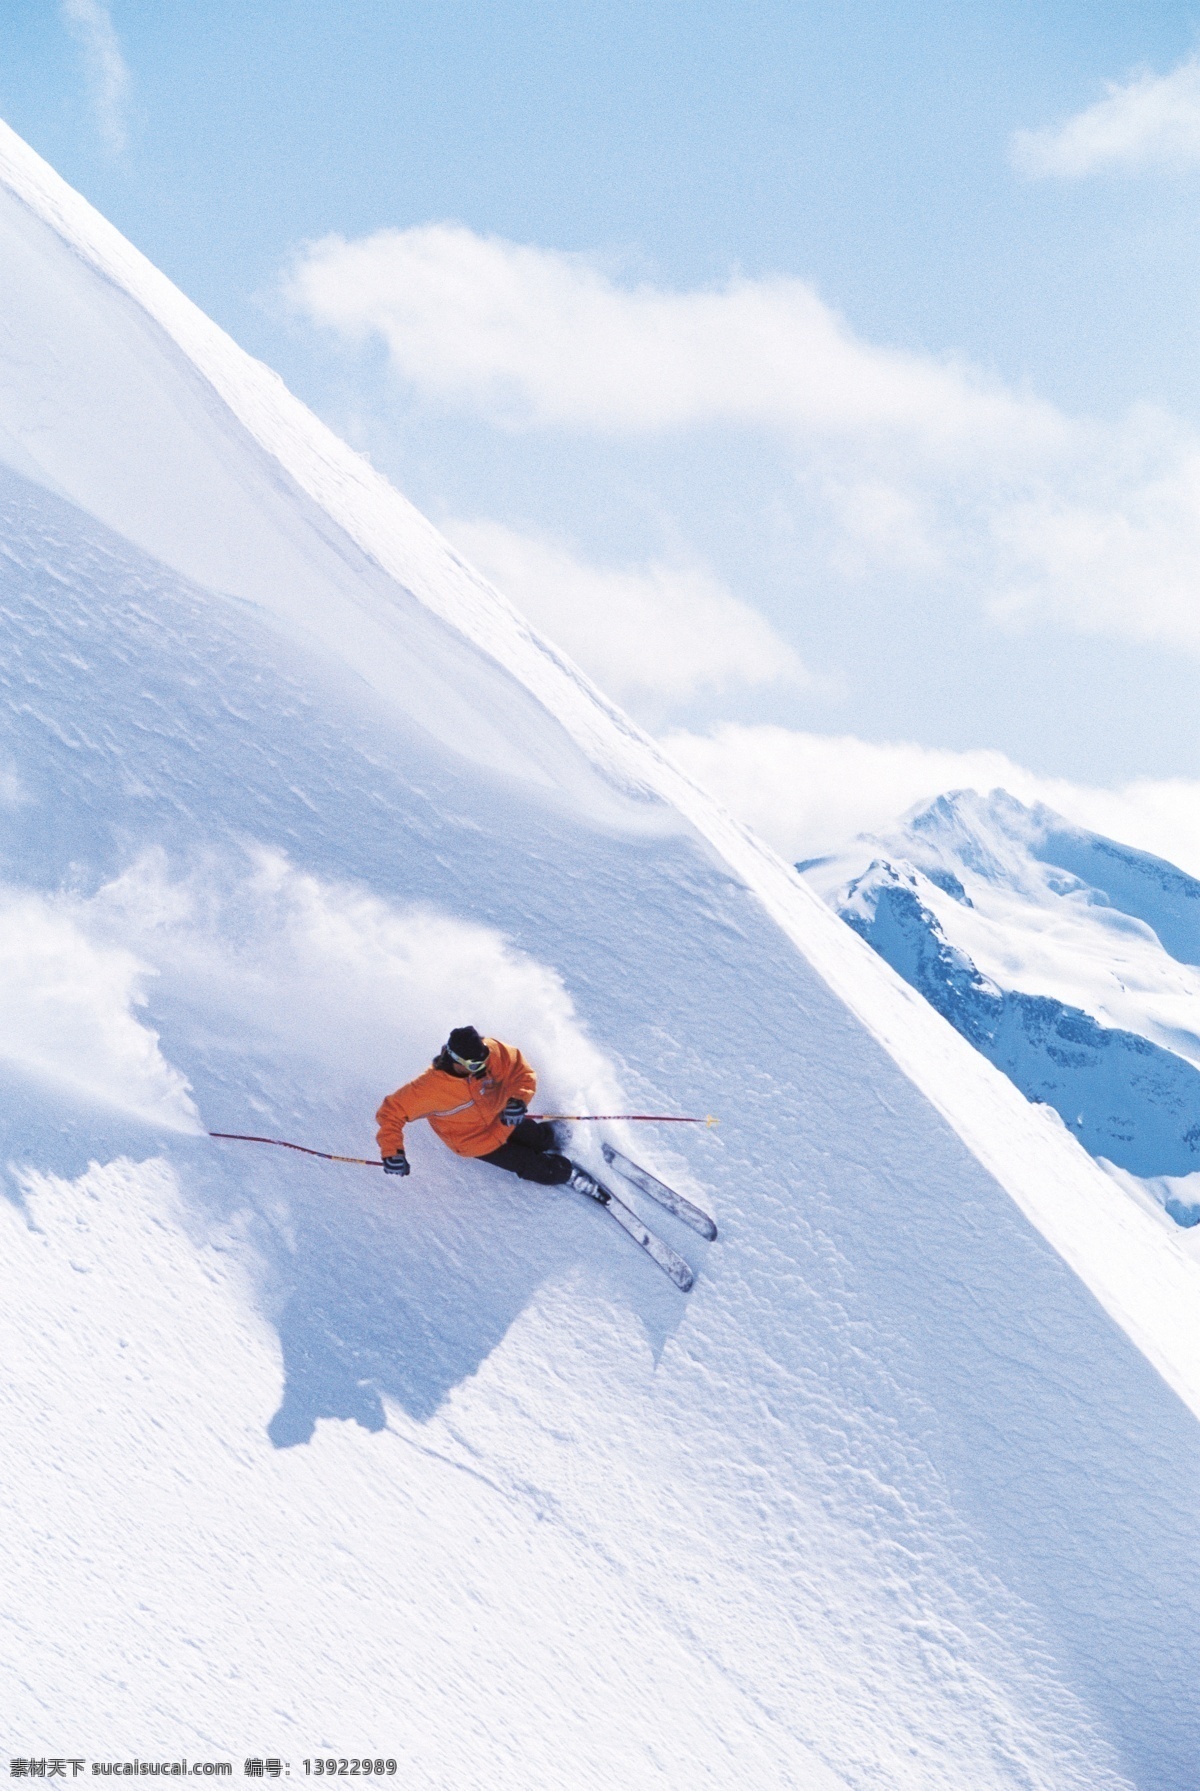 雪山 上 滑雪 运动员 高清 冬天 雪地运动 划雪运动 极限运动 体育项目 下滑 速度 运动图片 生活百科 美丽 雪景 风景 摄影图片 高清图片 体育运动 白色